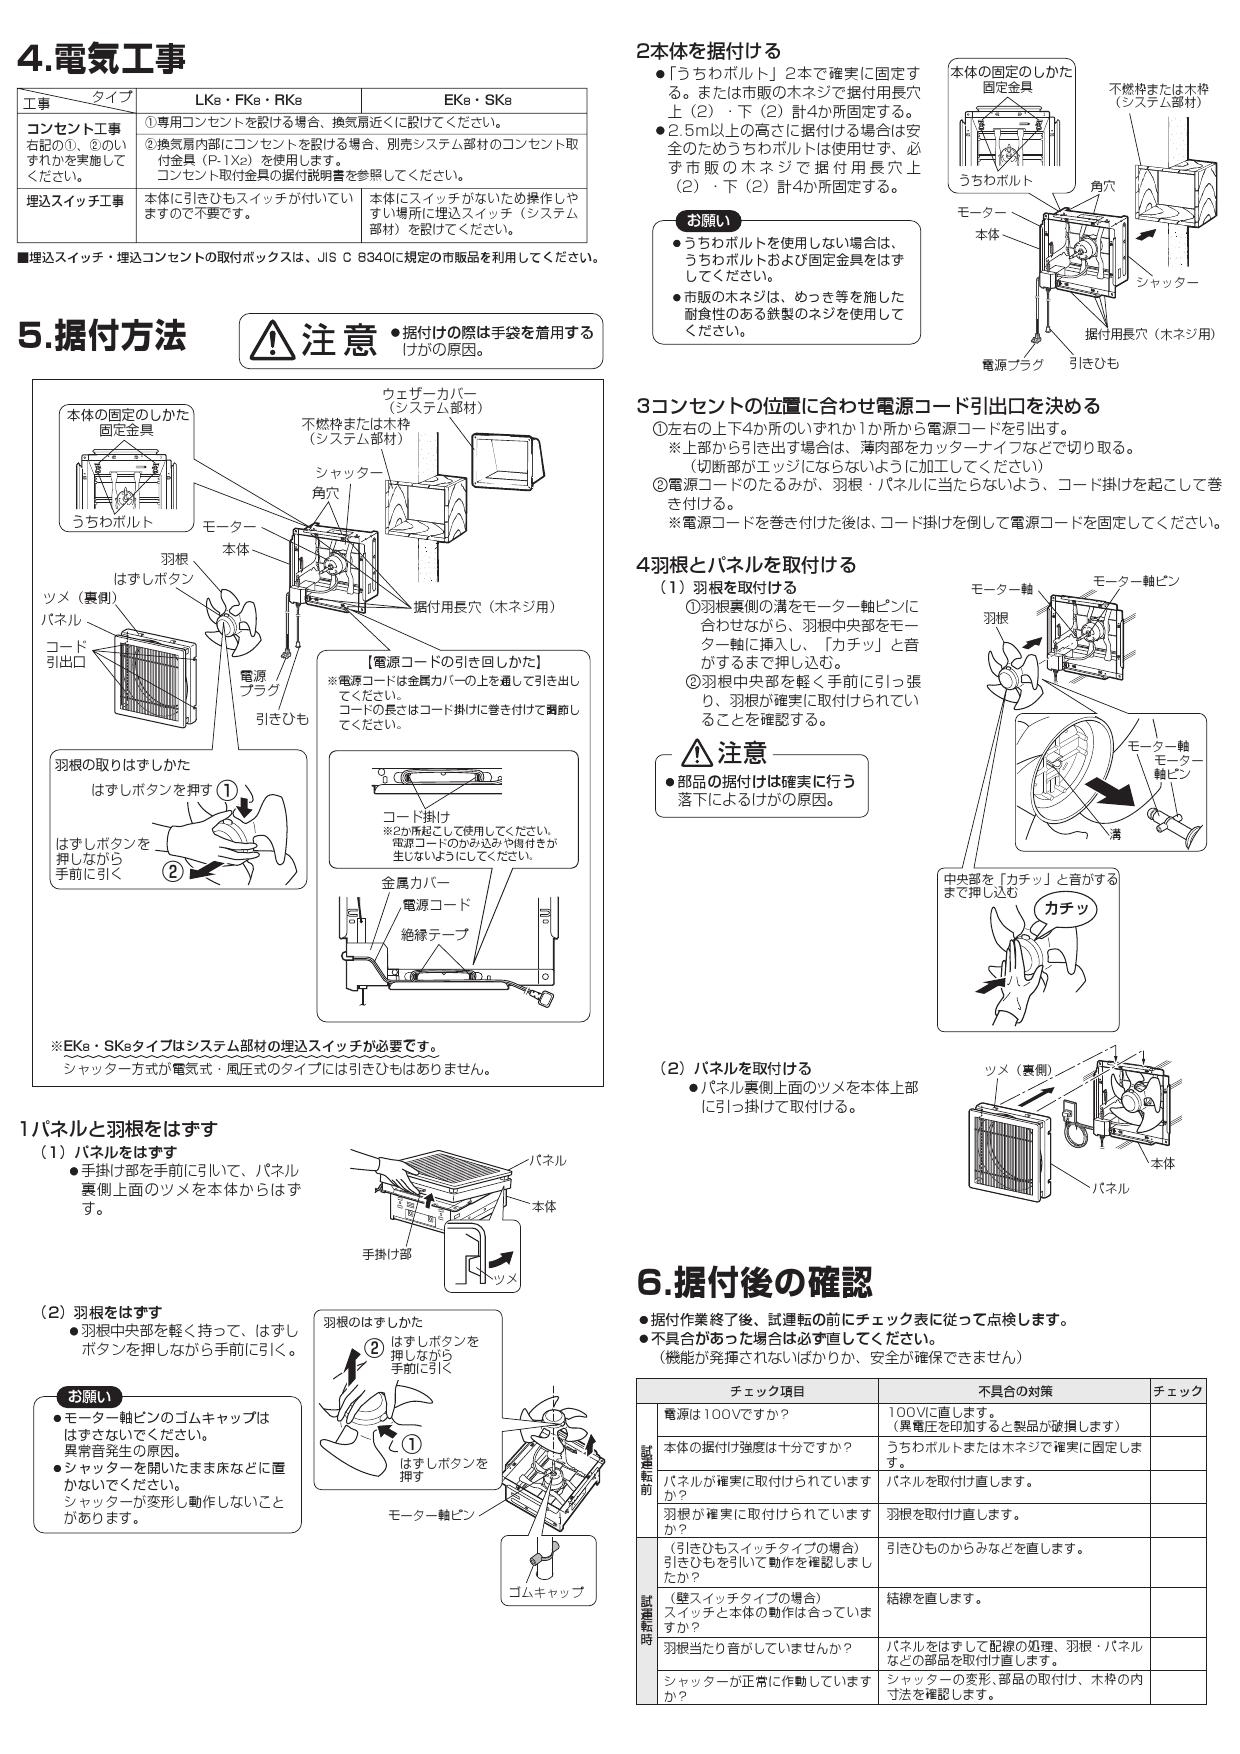 三菱電機 EX-30RK8-C取扱説明書 納入仕様図 | 通販 プロストア ダイレクト